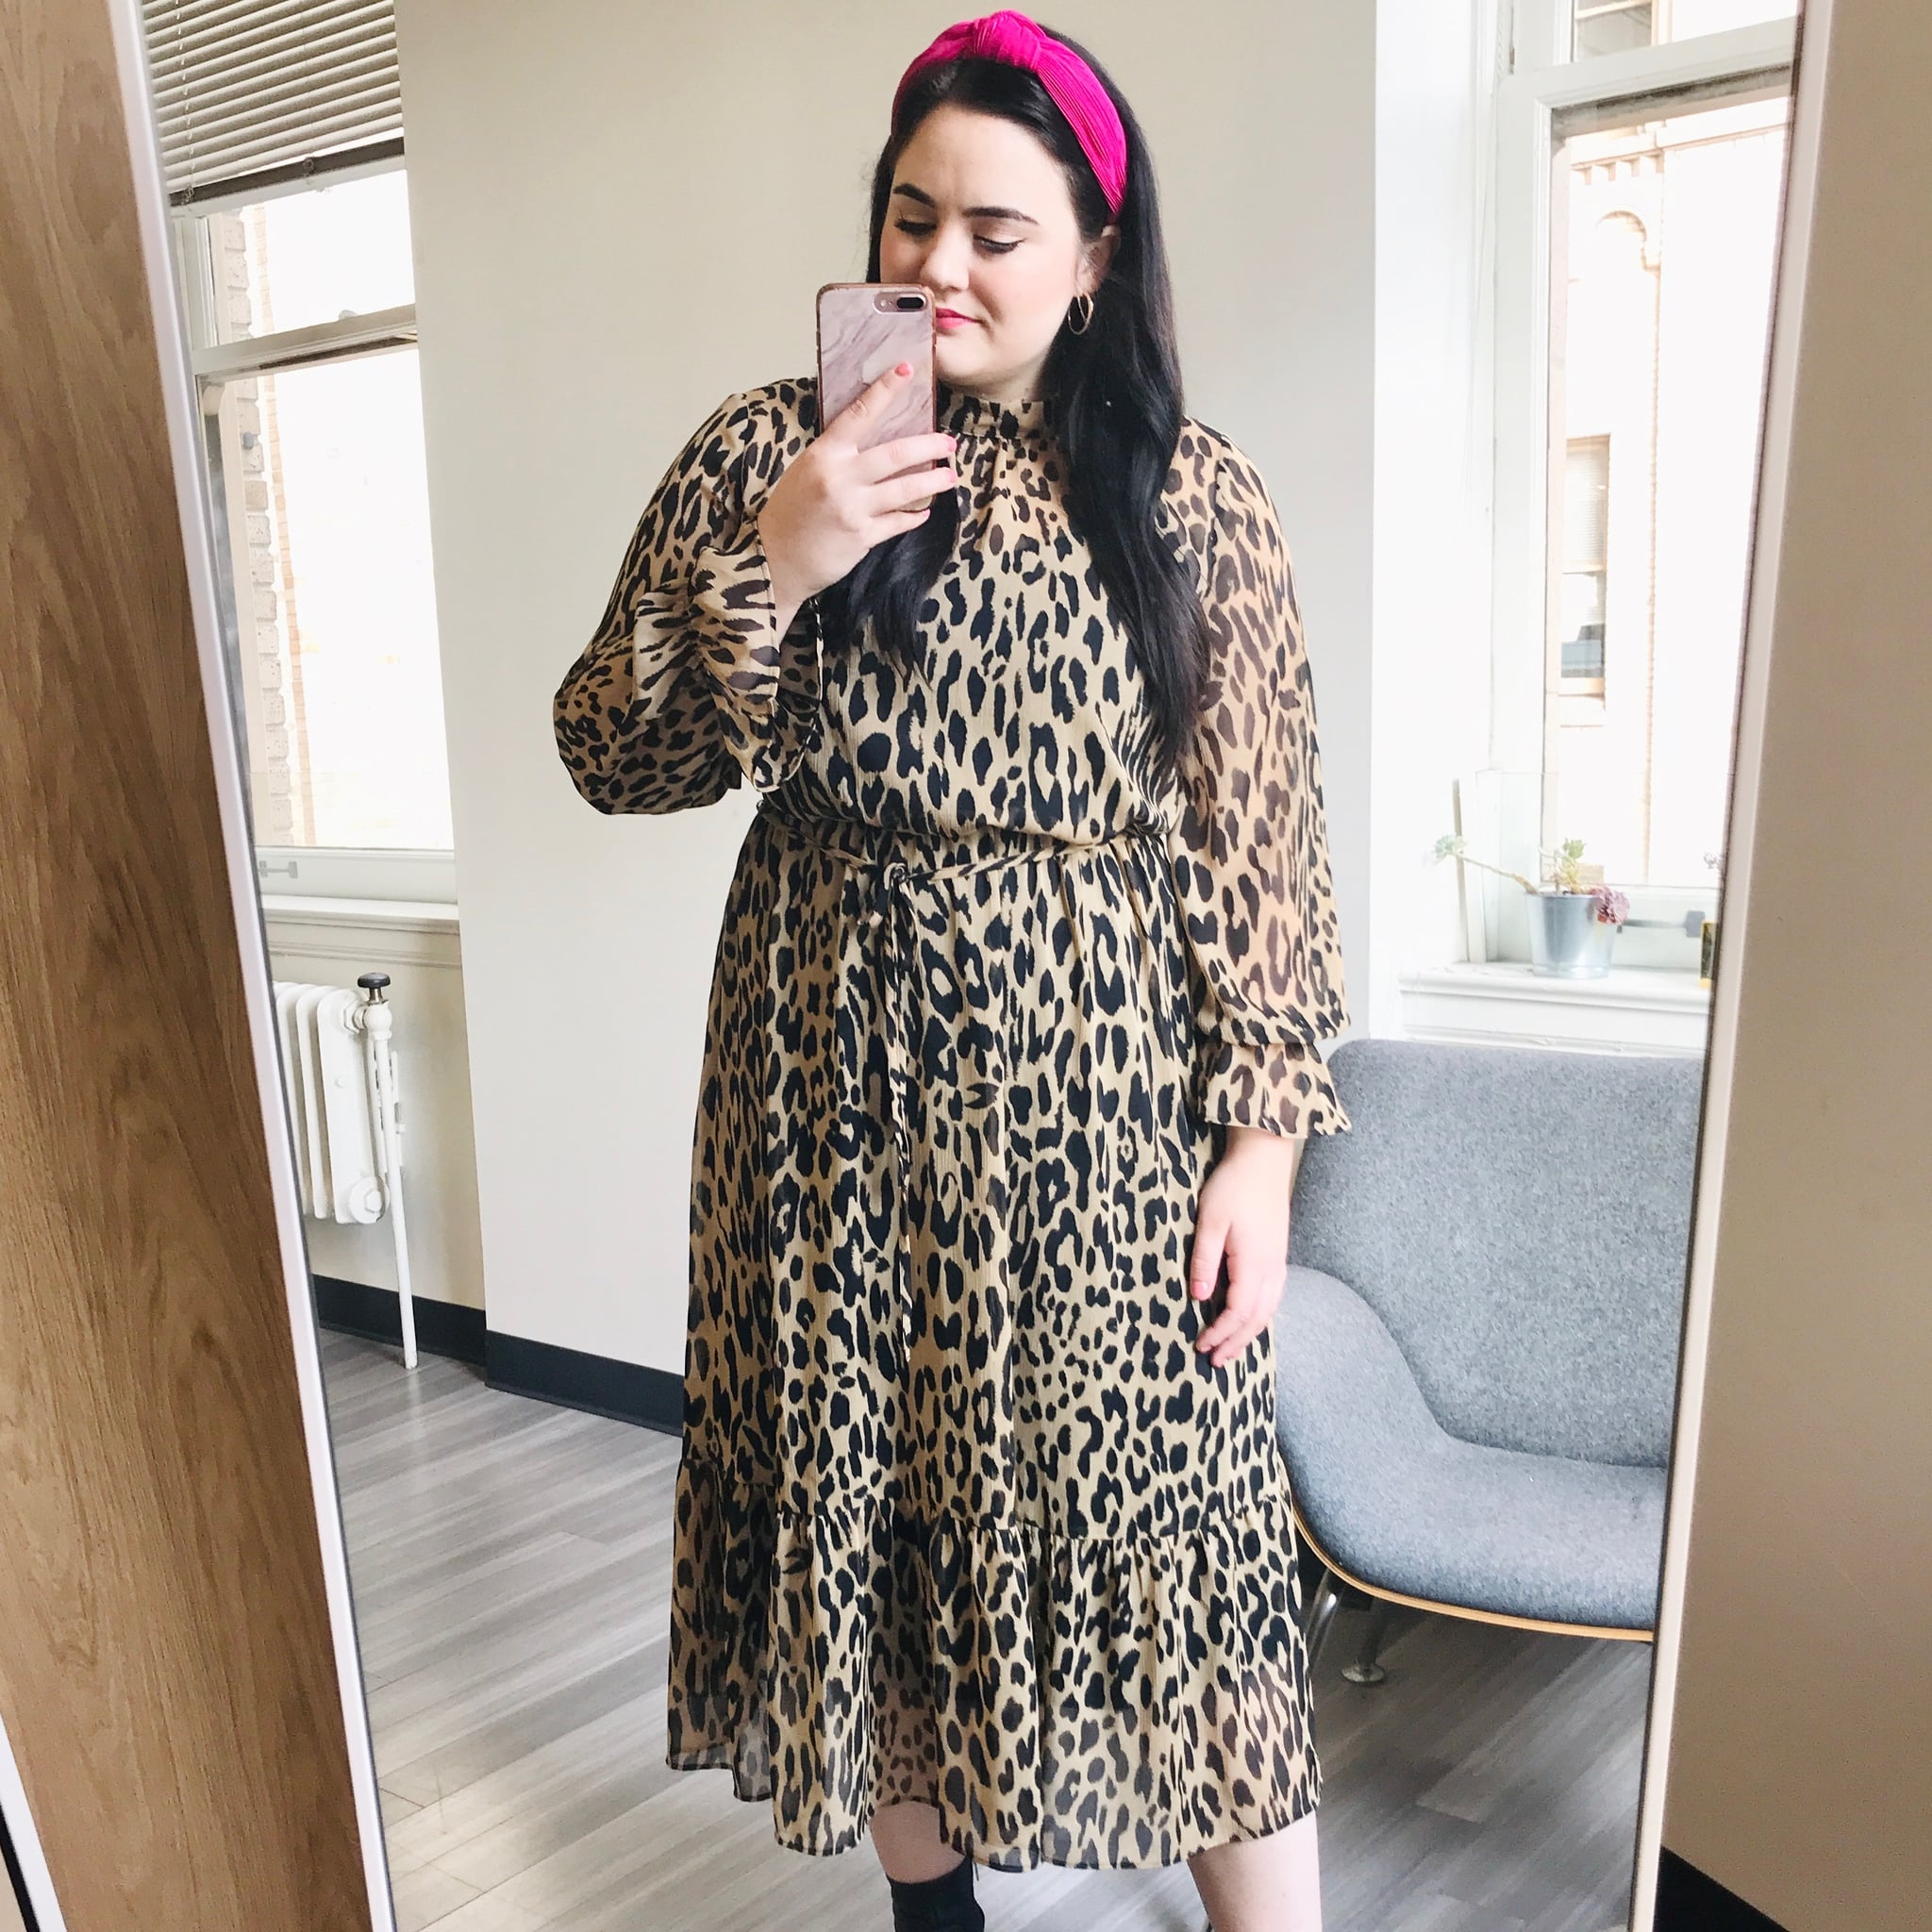 leopard print dress next